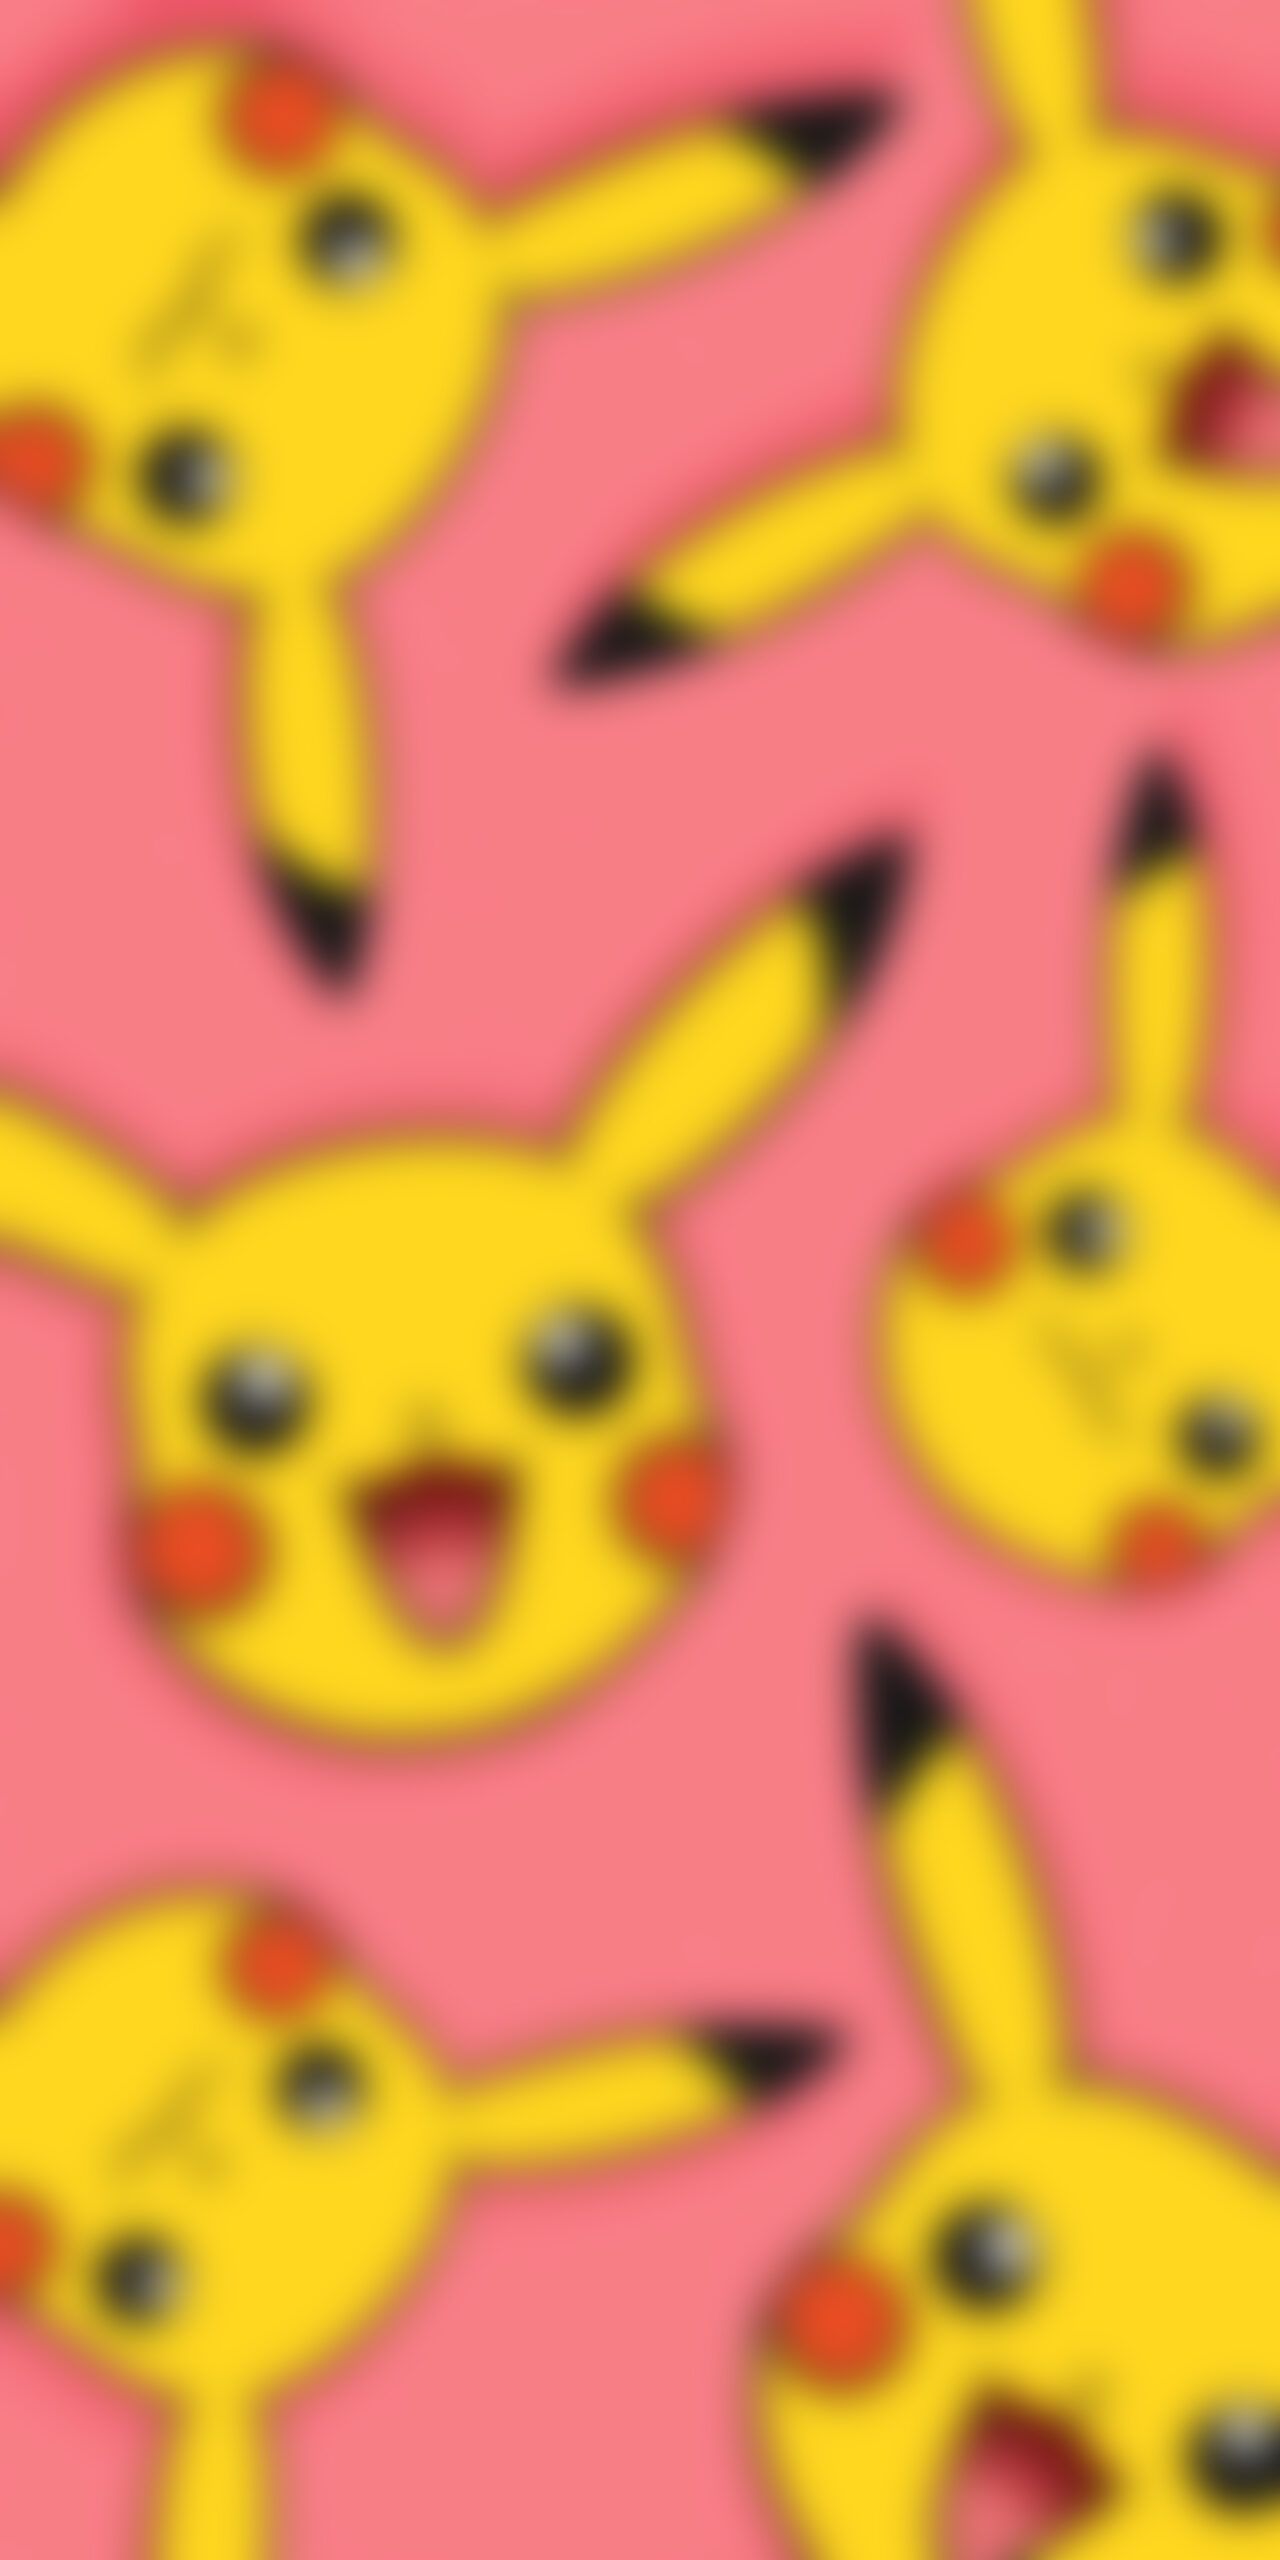 Pokémon Smiling Pikachu Pink Wallpaper